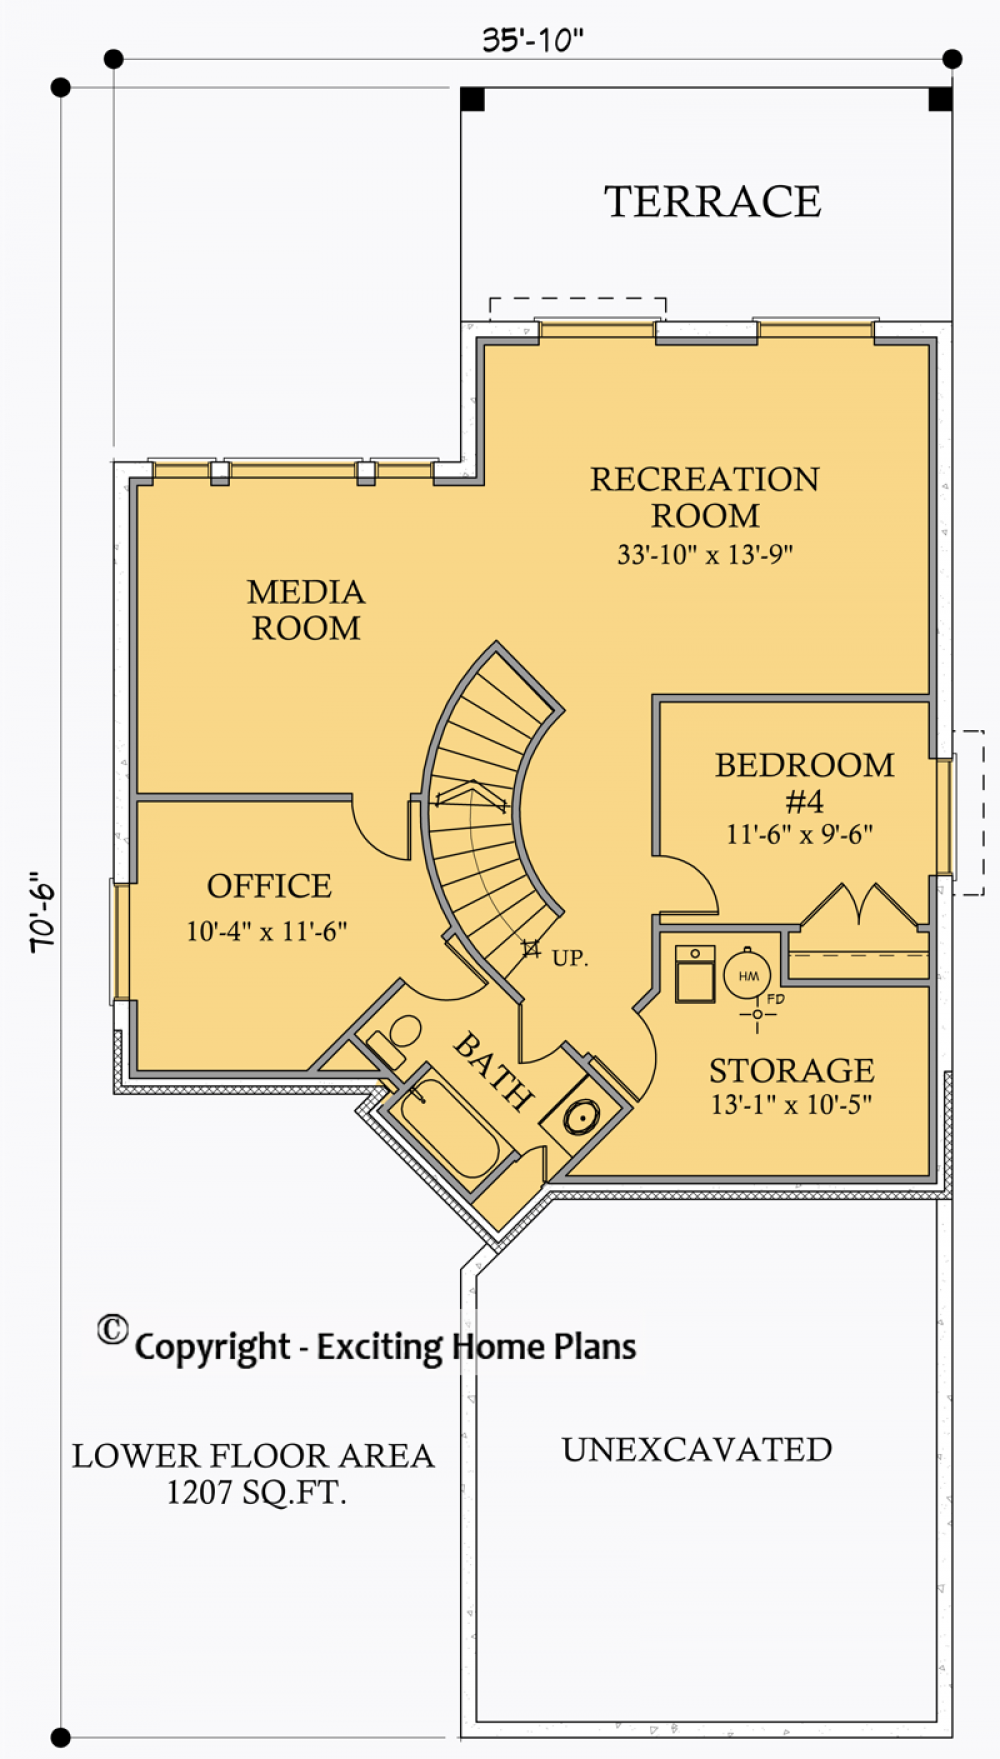 House Plan E1027-10 Lower Floor Plan